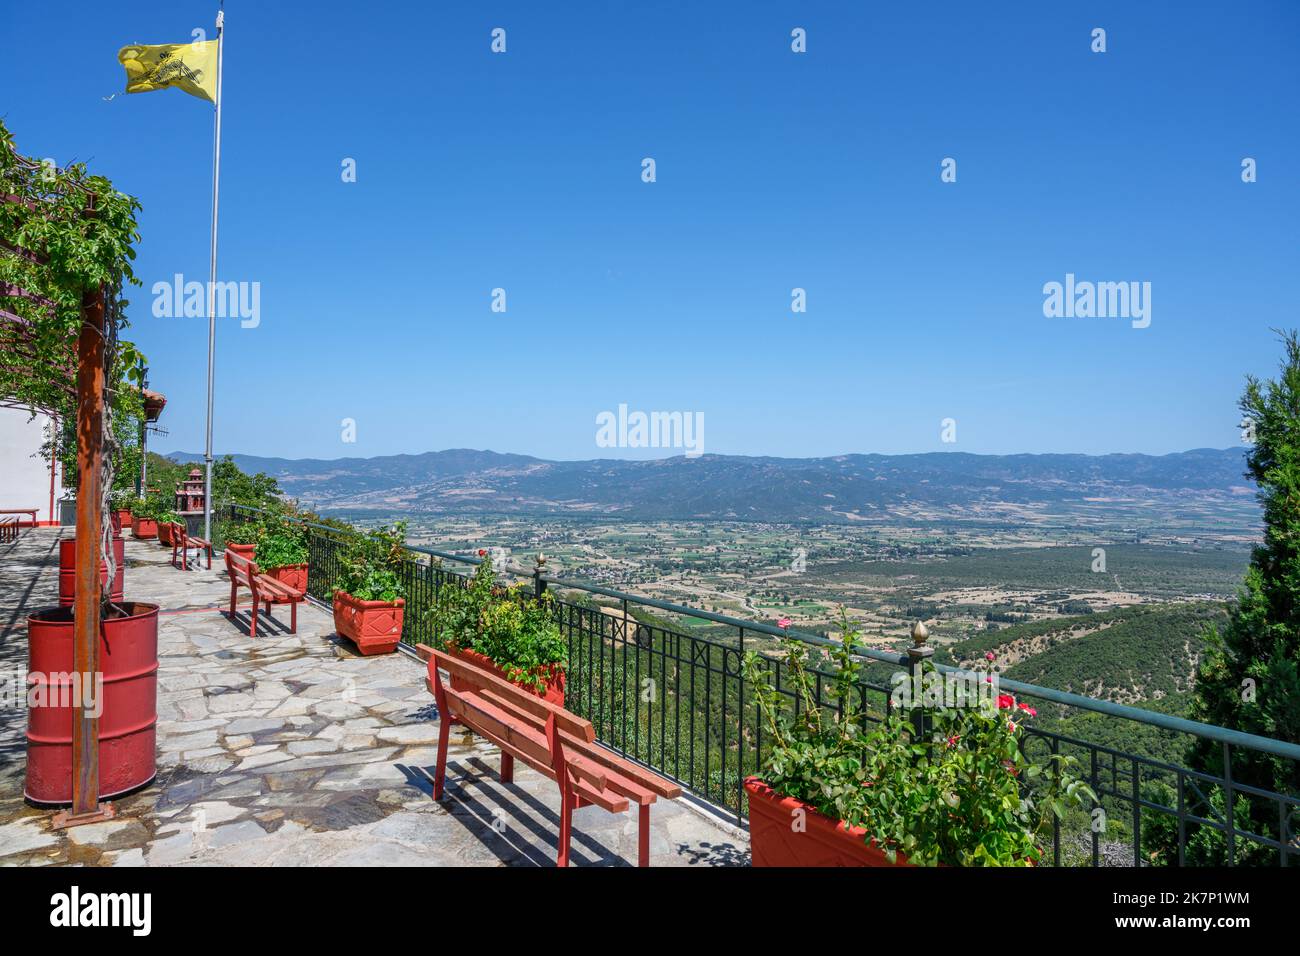 Blick von der Terrasse auf das Kloster Agathon (Agathonos), Iti Nationalpark, Zentralgriechenland, Griechenland Stockfoto